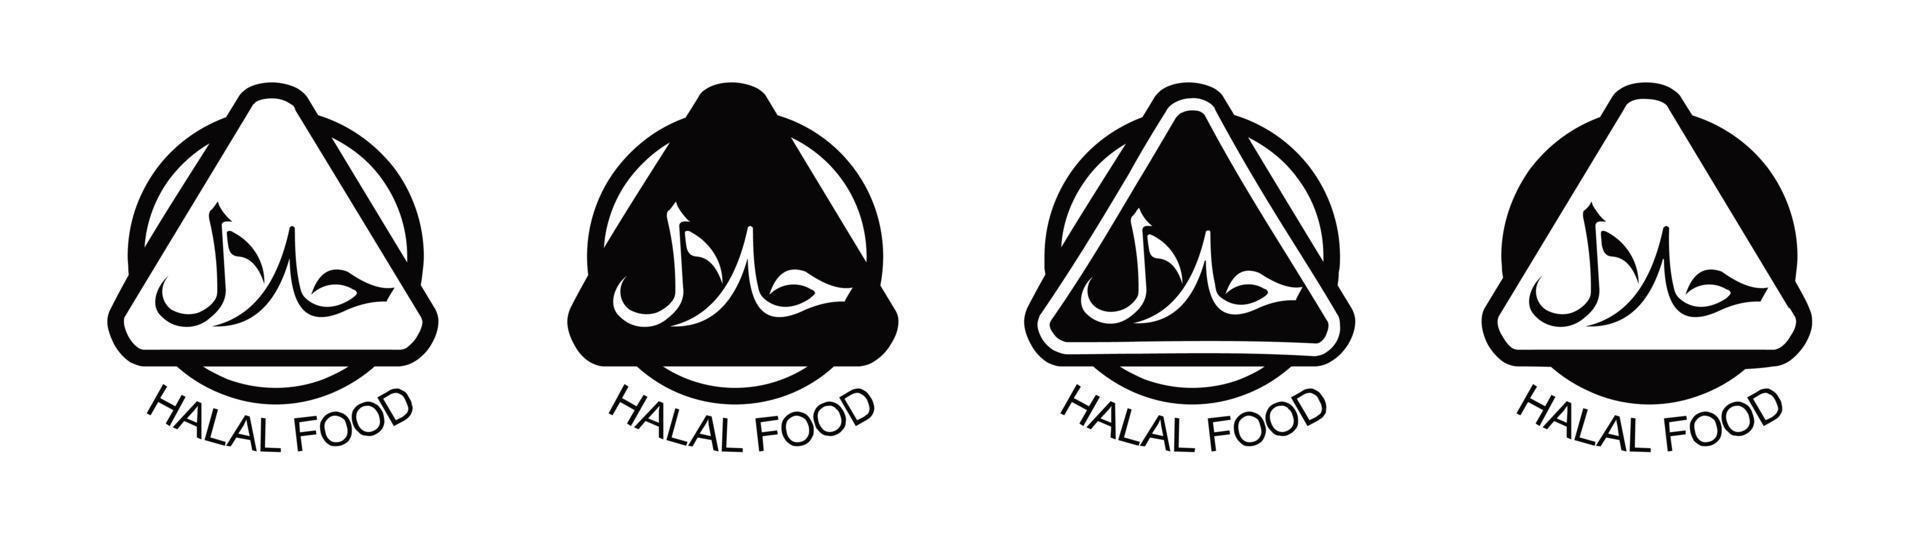 conjunto de ícones halal produto emblema vector illustration.set de rótulos de produtos alimentares halal, etiqueta de certificado de sinal halal vector.